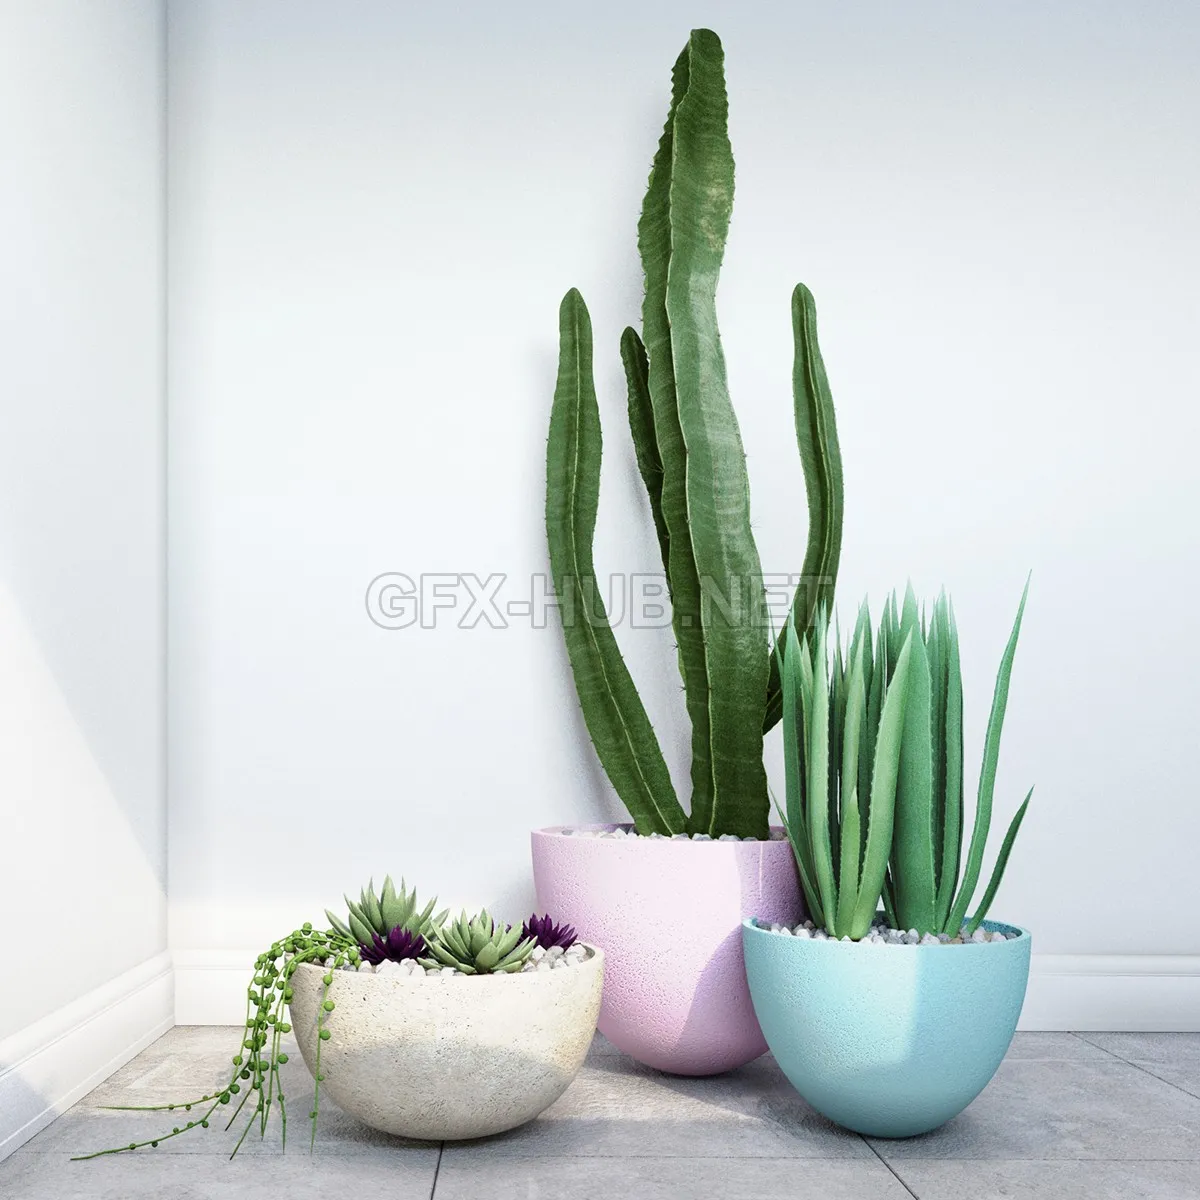 Cactus (max, fbx) – 1286